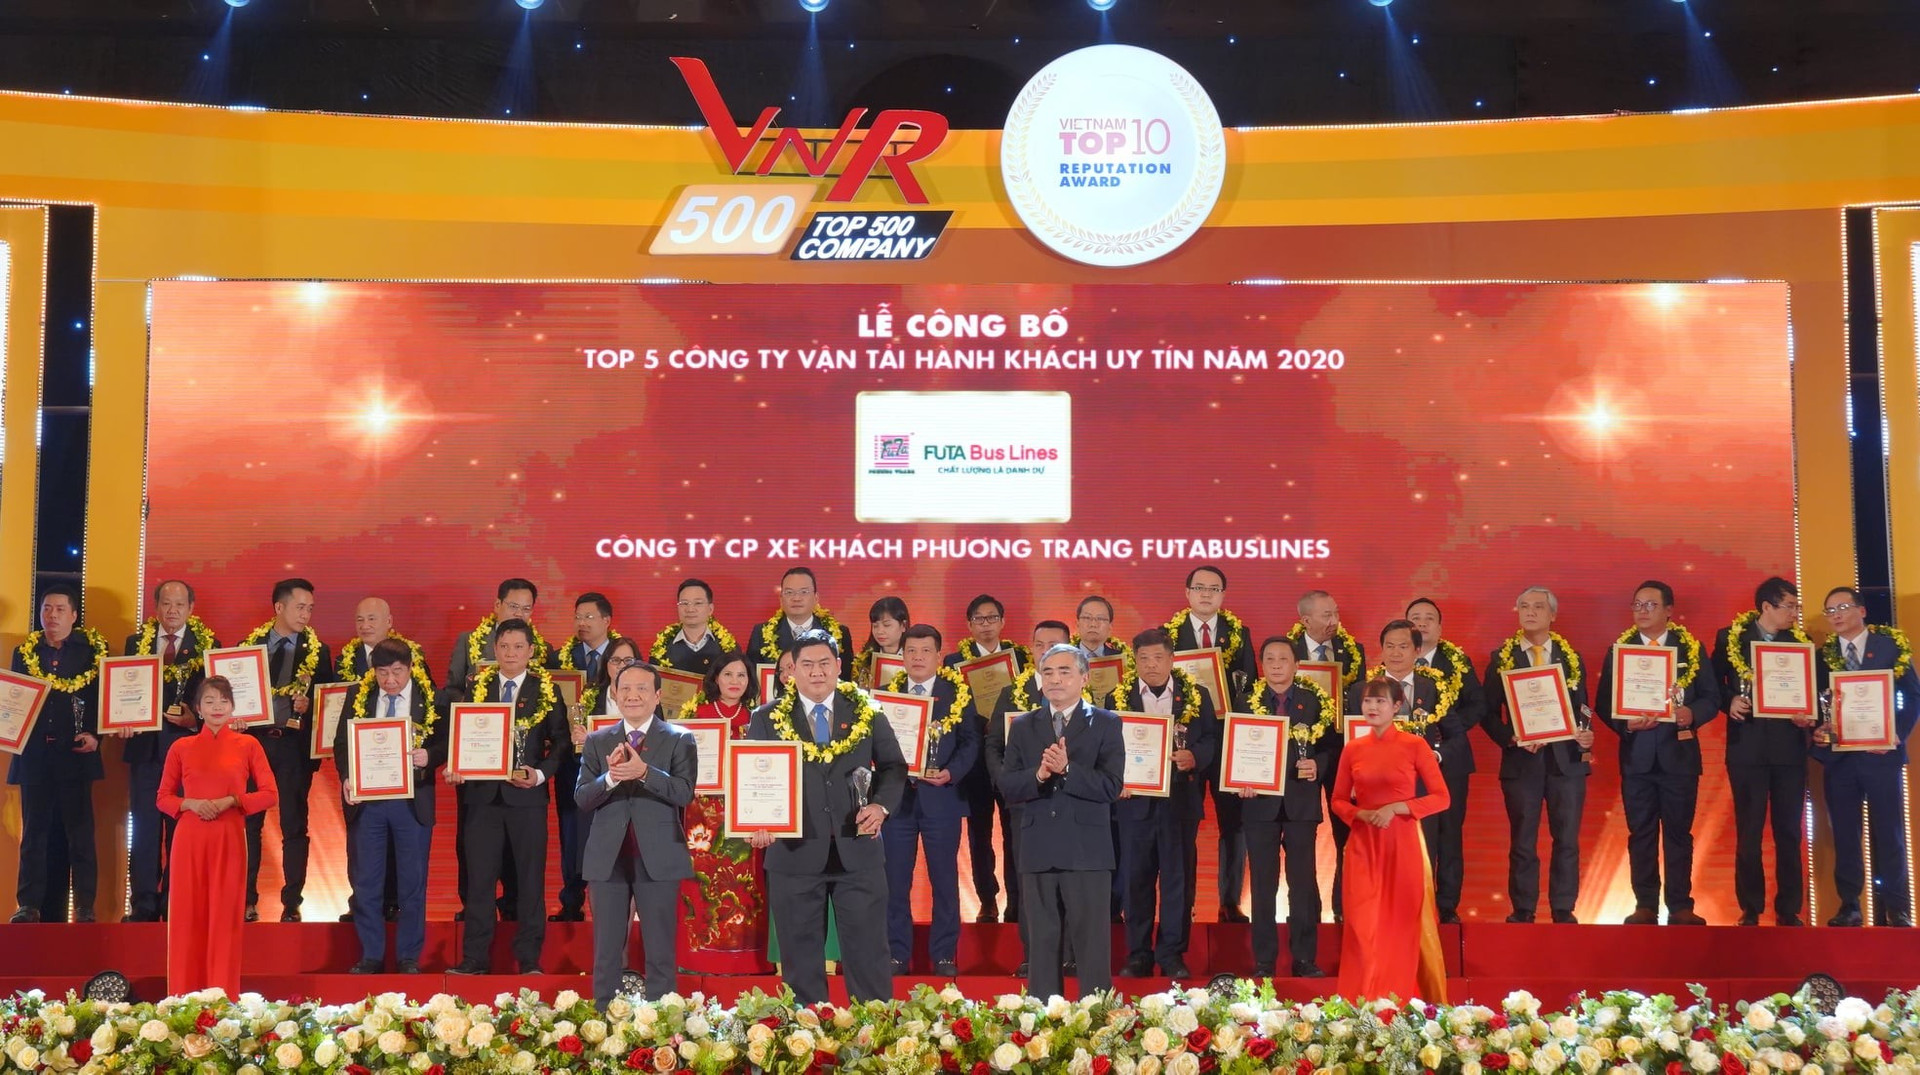 Ông Đặng Thanh Măng - Giám đốc Điều hành của Phương Trang - FUTA Bus Lines nhận chứng nhận danh hiệu Top 5 công ty vận tải hành khách uy tín năm 2020